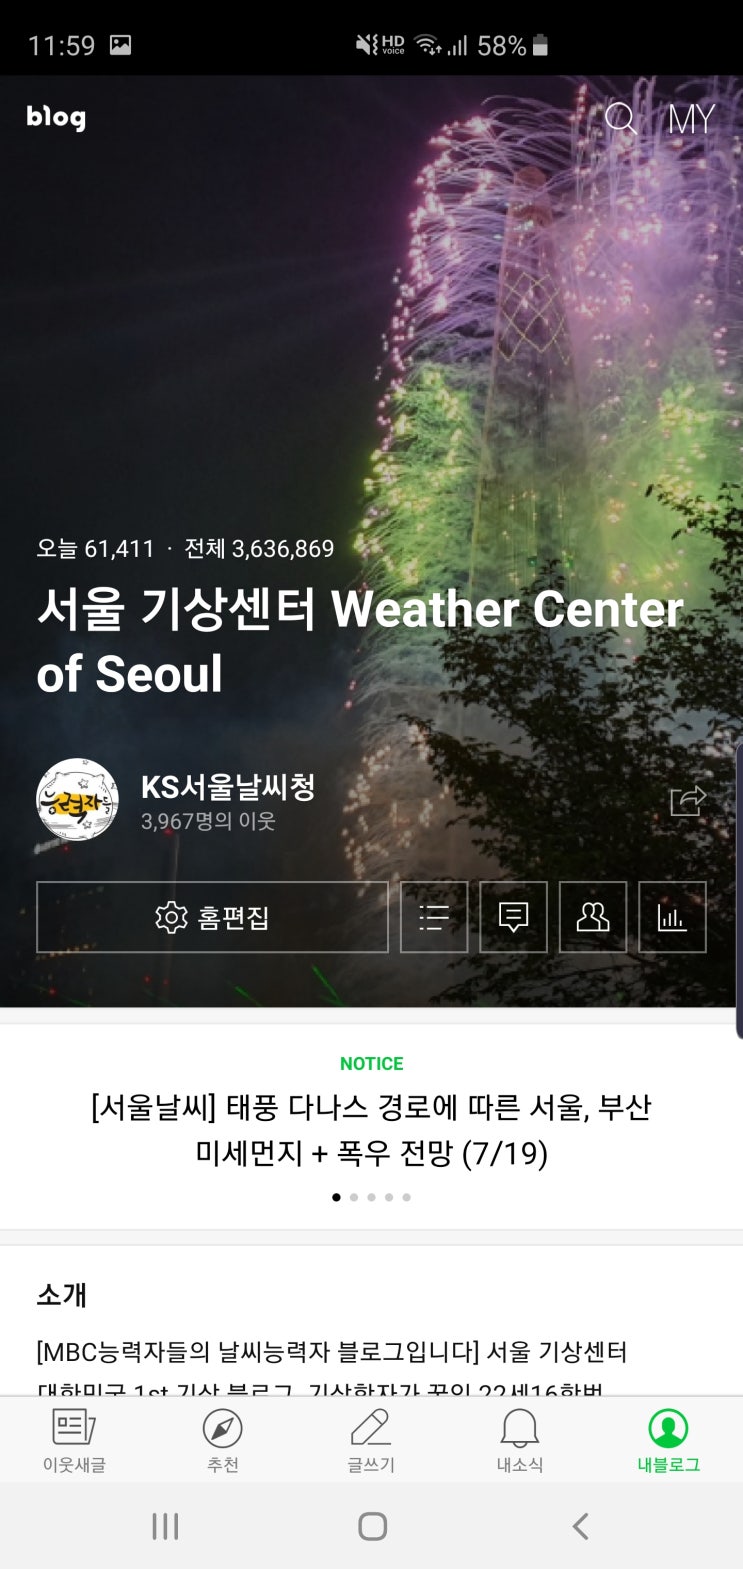 서울기상센터 블로그 하루 투데이 6만 1천명 기록!